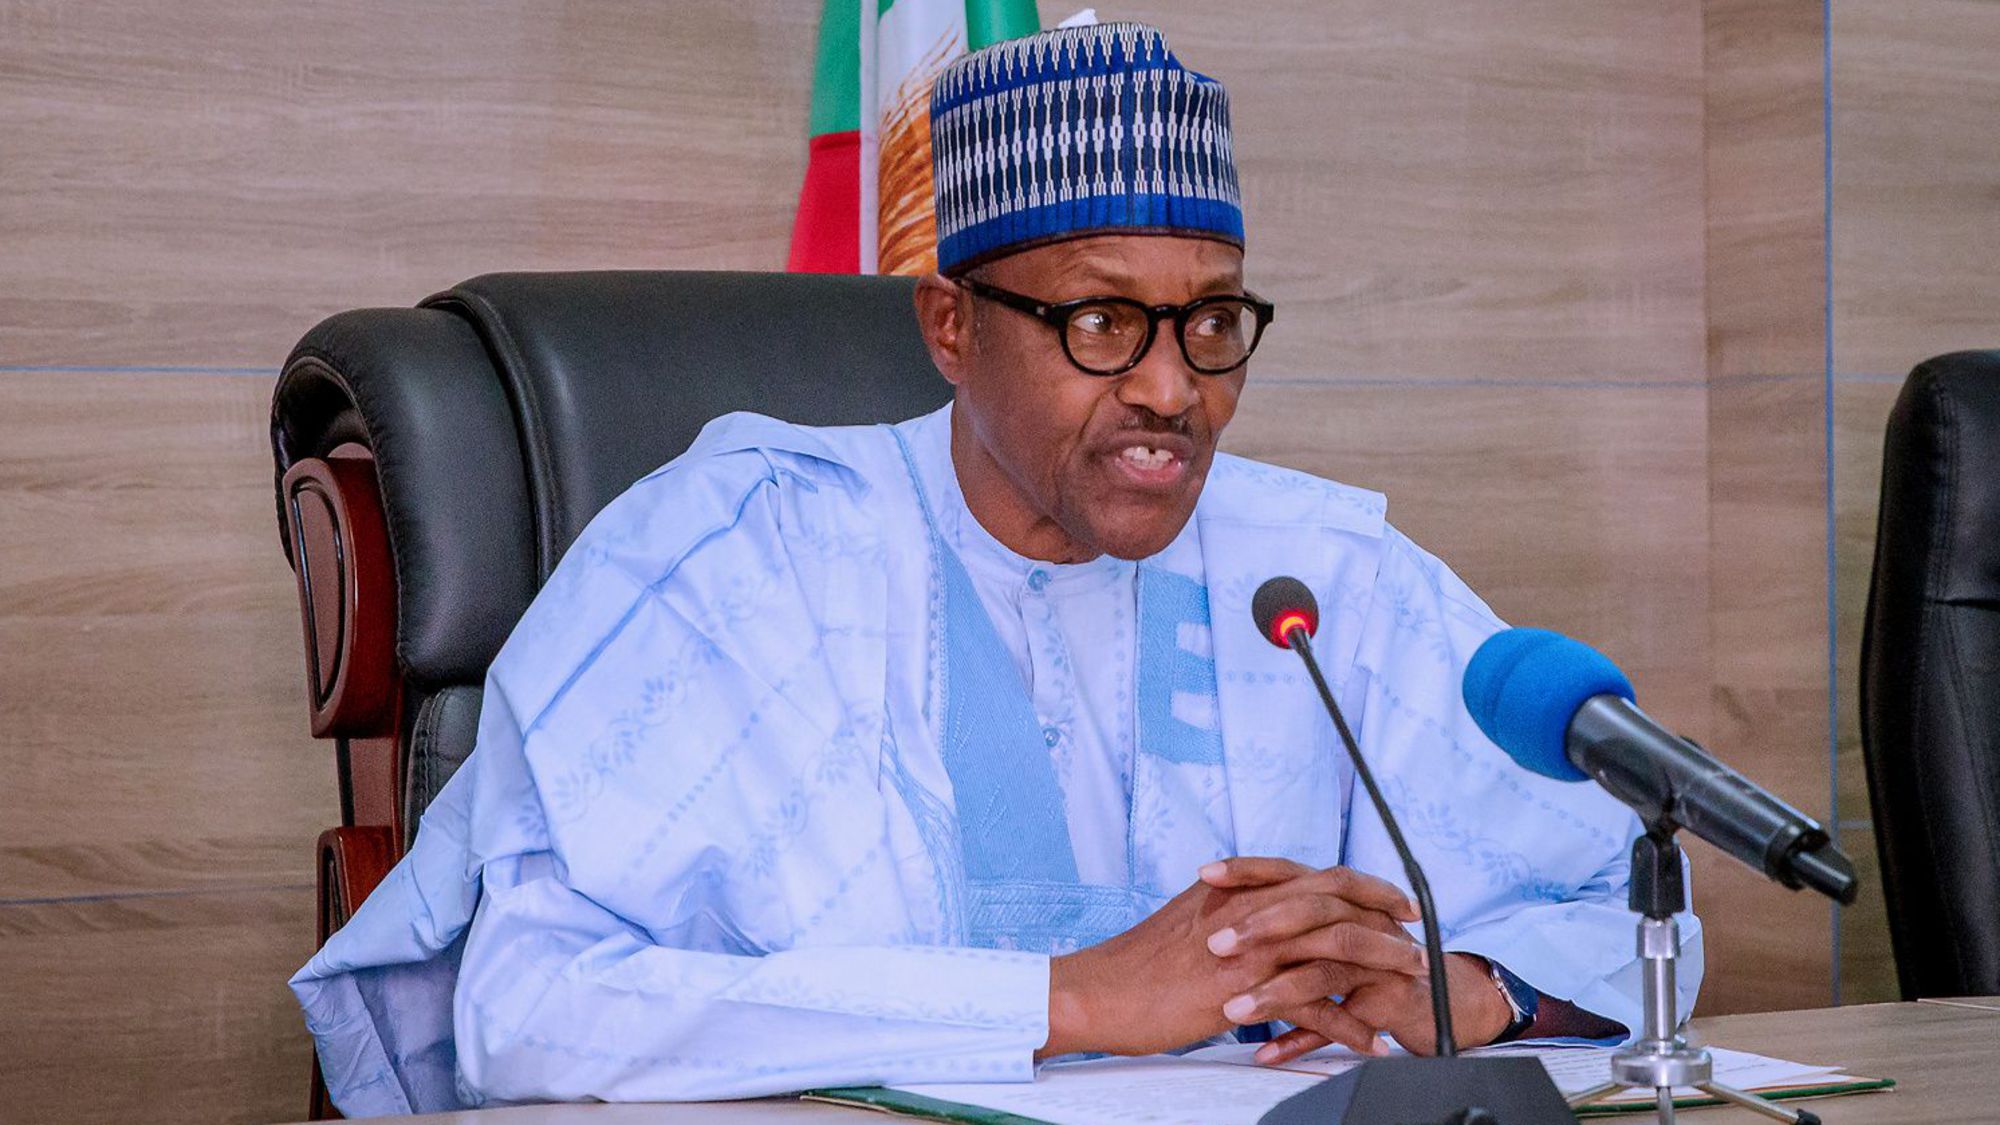 Le président nigérian sollicite le soutien des Etats-Unis dans la lutte contre le terrorisme en Afrique